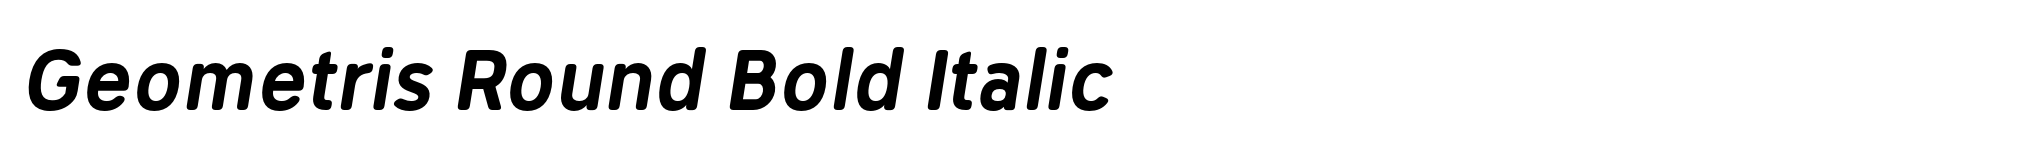 Geometris Round Bold Italic image